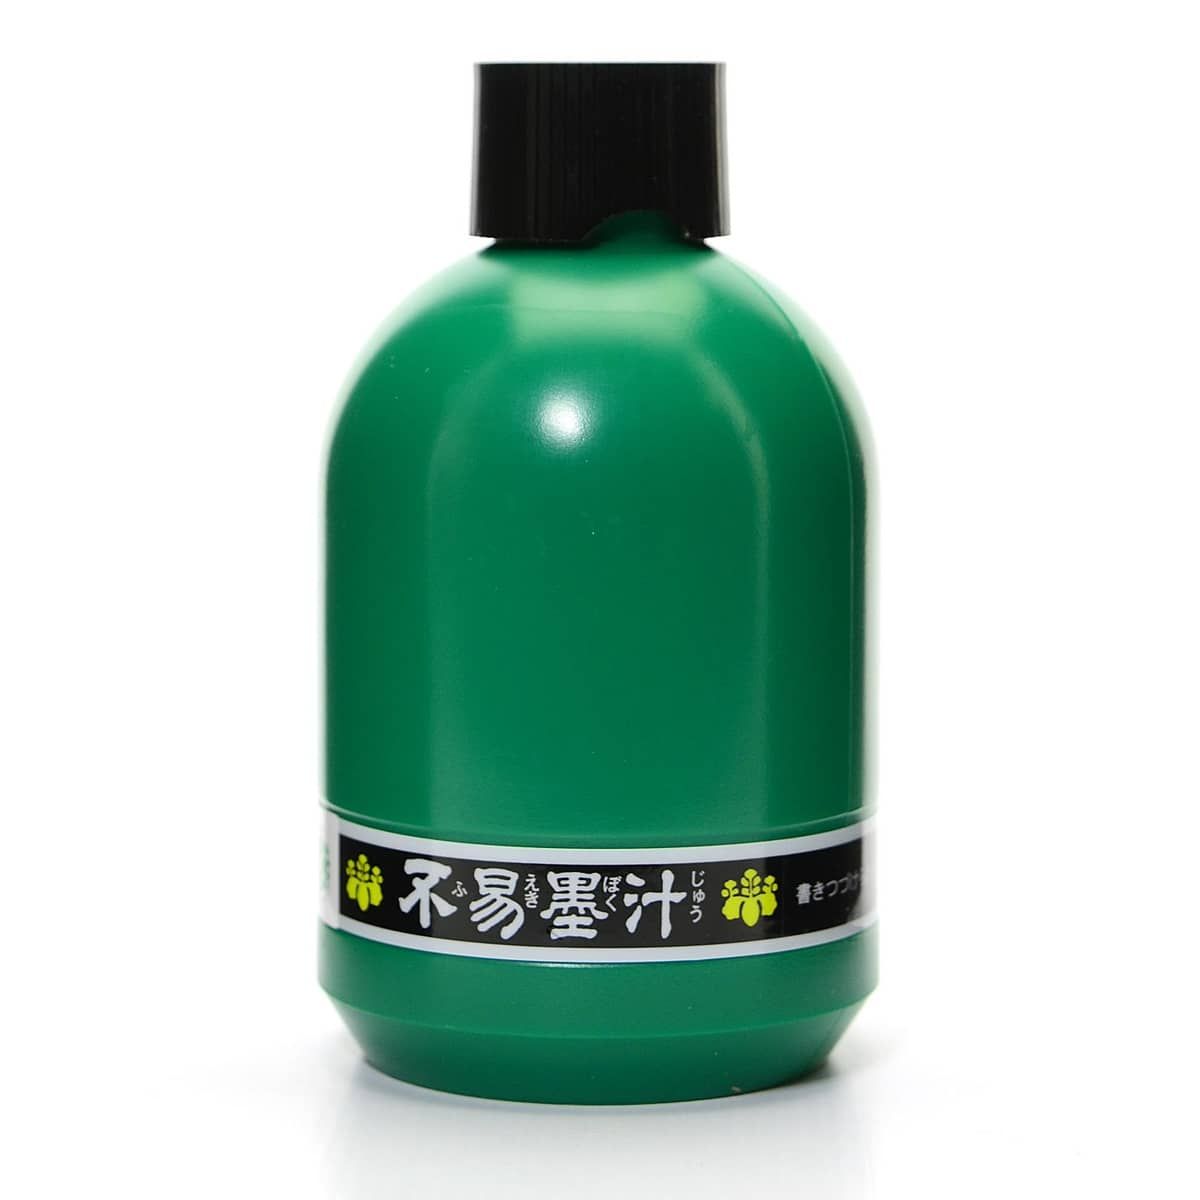 KF2 – Liquid Sumi Ink (2 oz) – Yasutomo